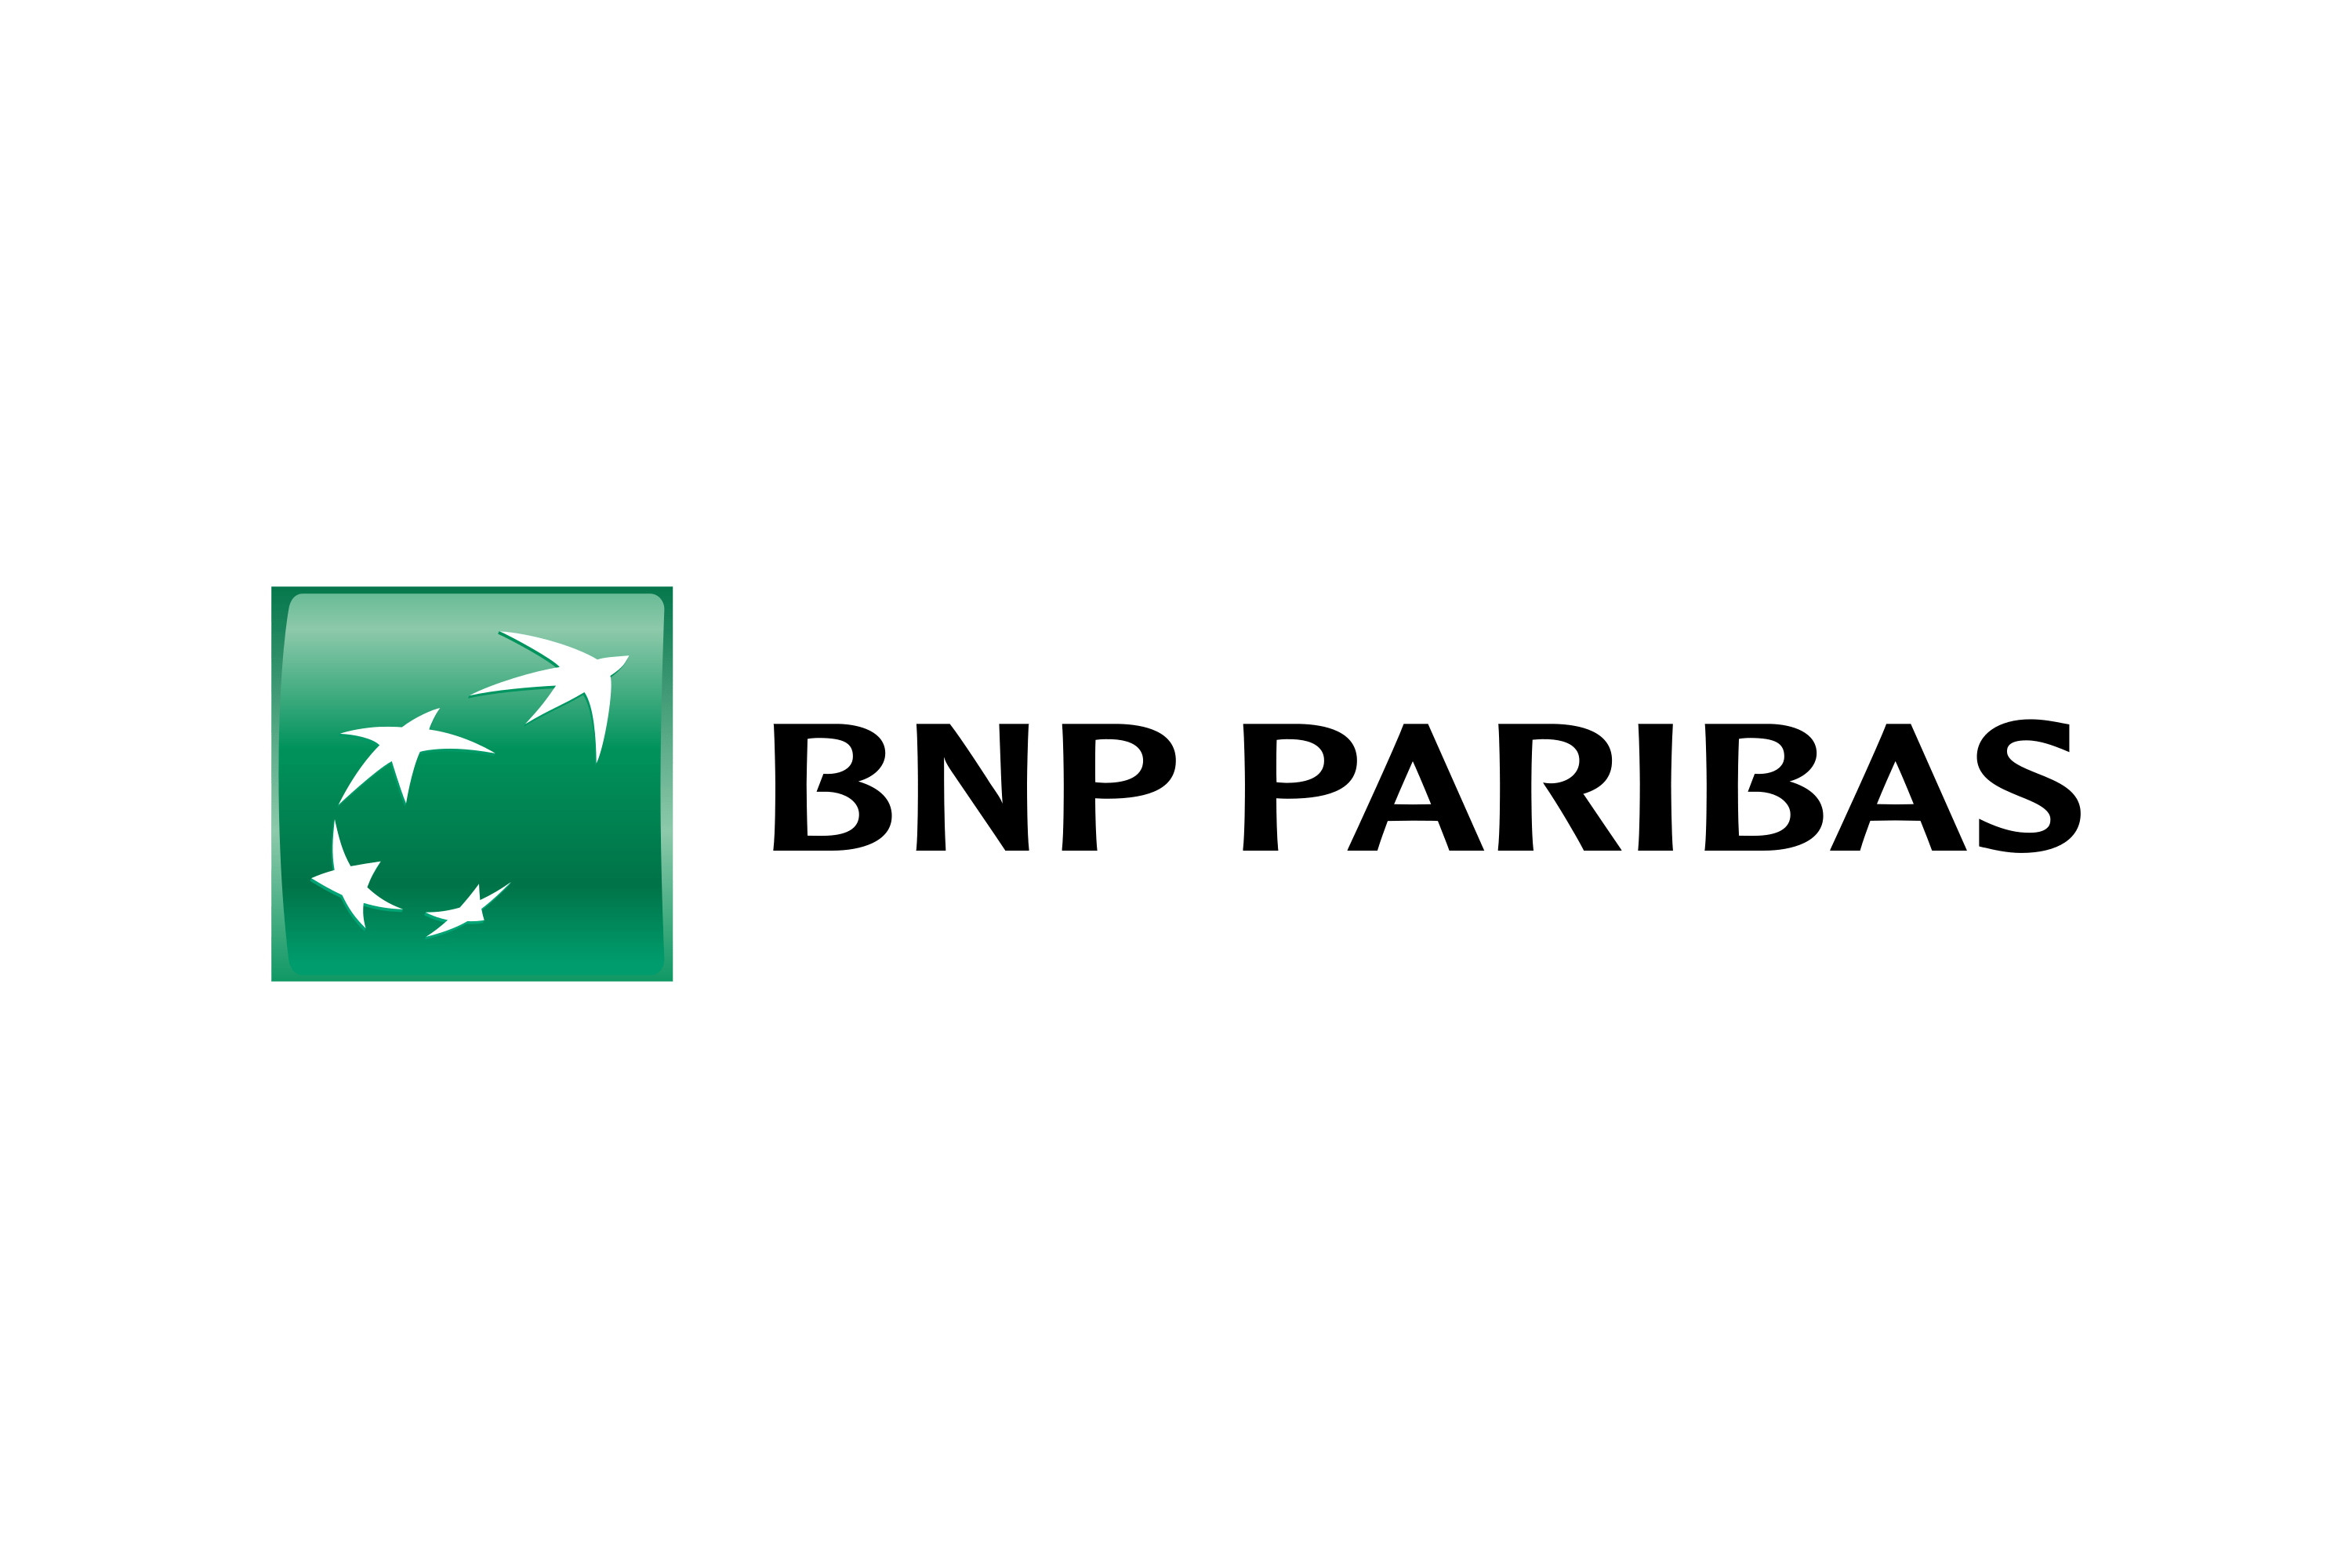 Download BNP Paribas Logo in SVG Vector or PNG File Format - Logo.wine